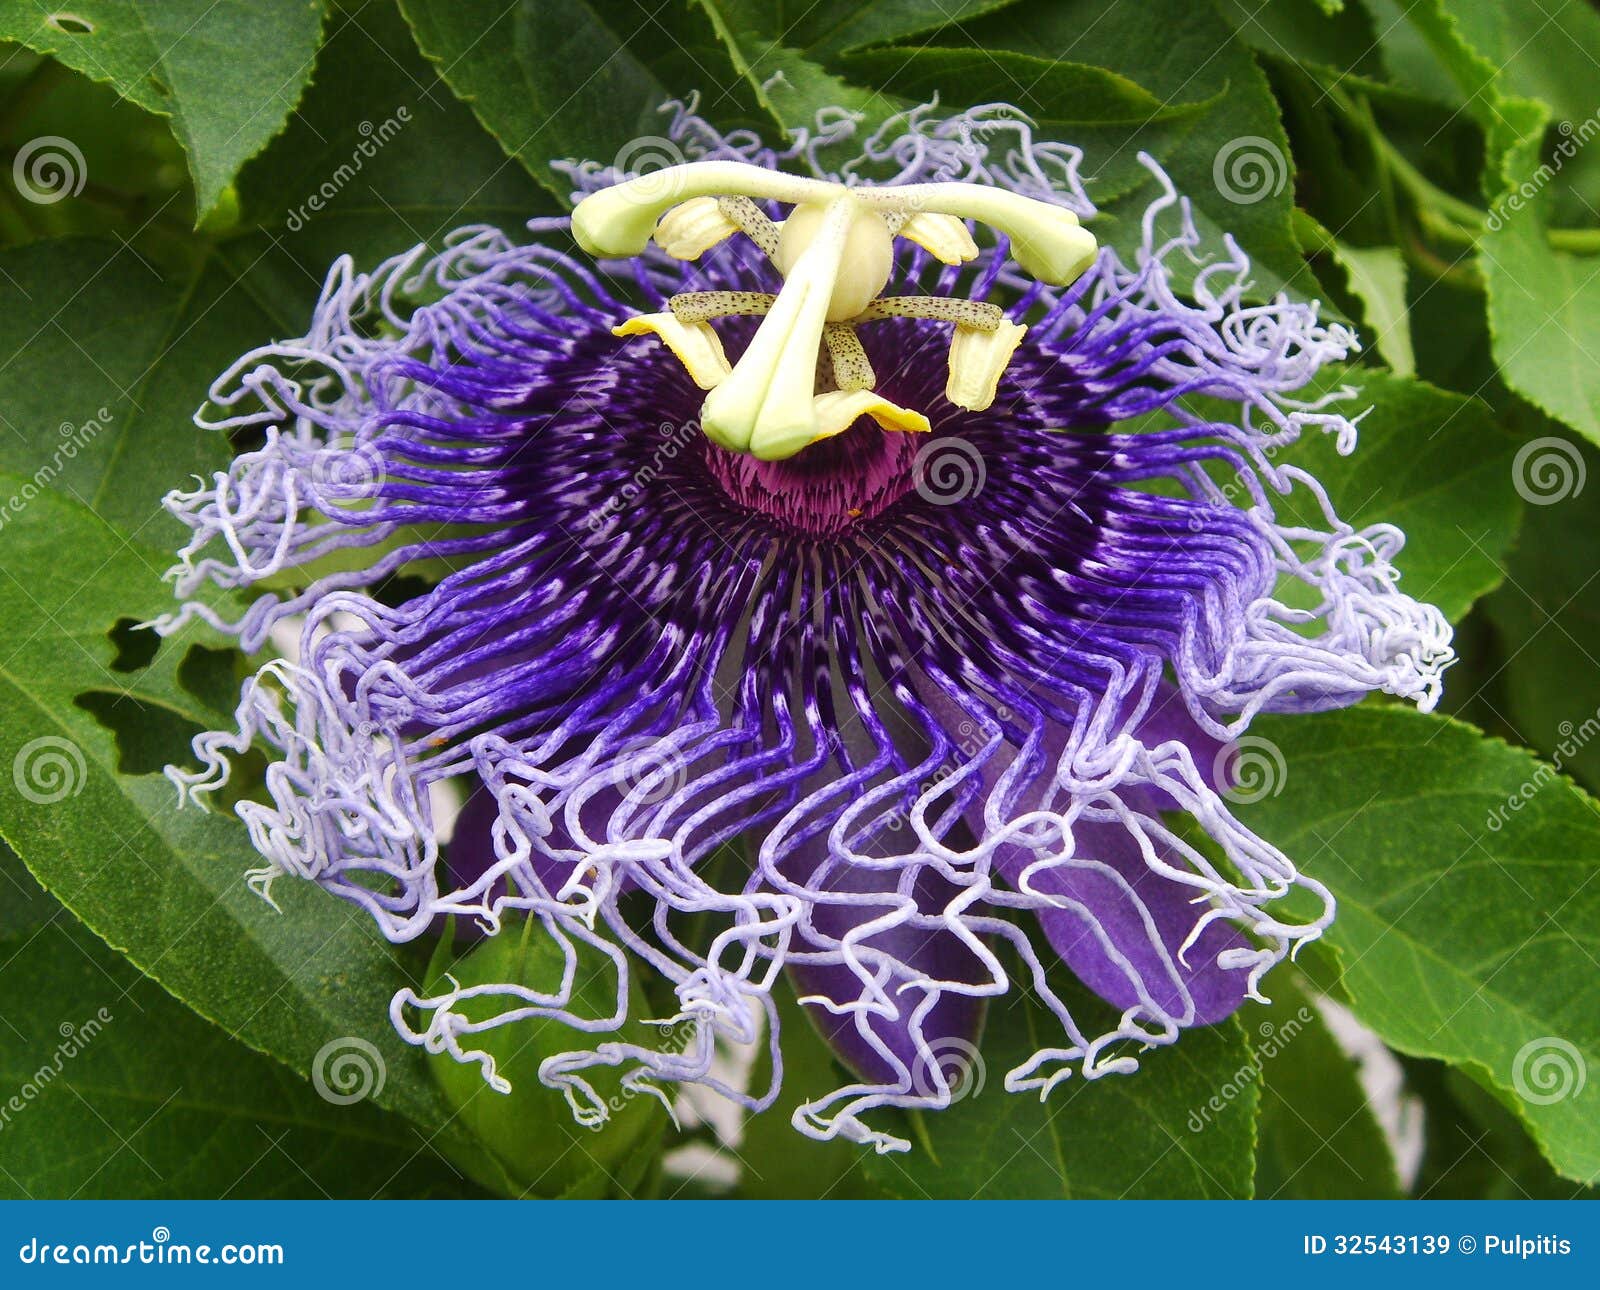 Purpurowy passionflower. Purpurowy Passiflora incarnata lub passionflower